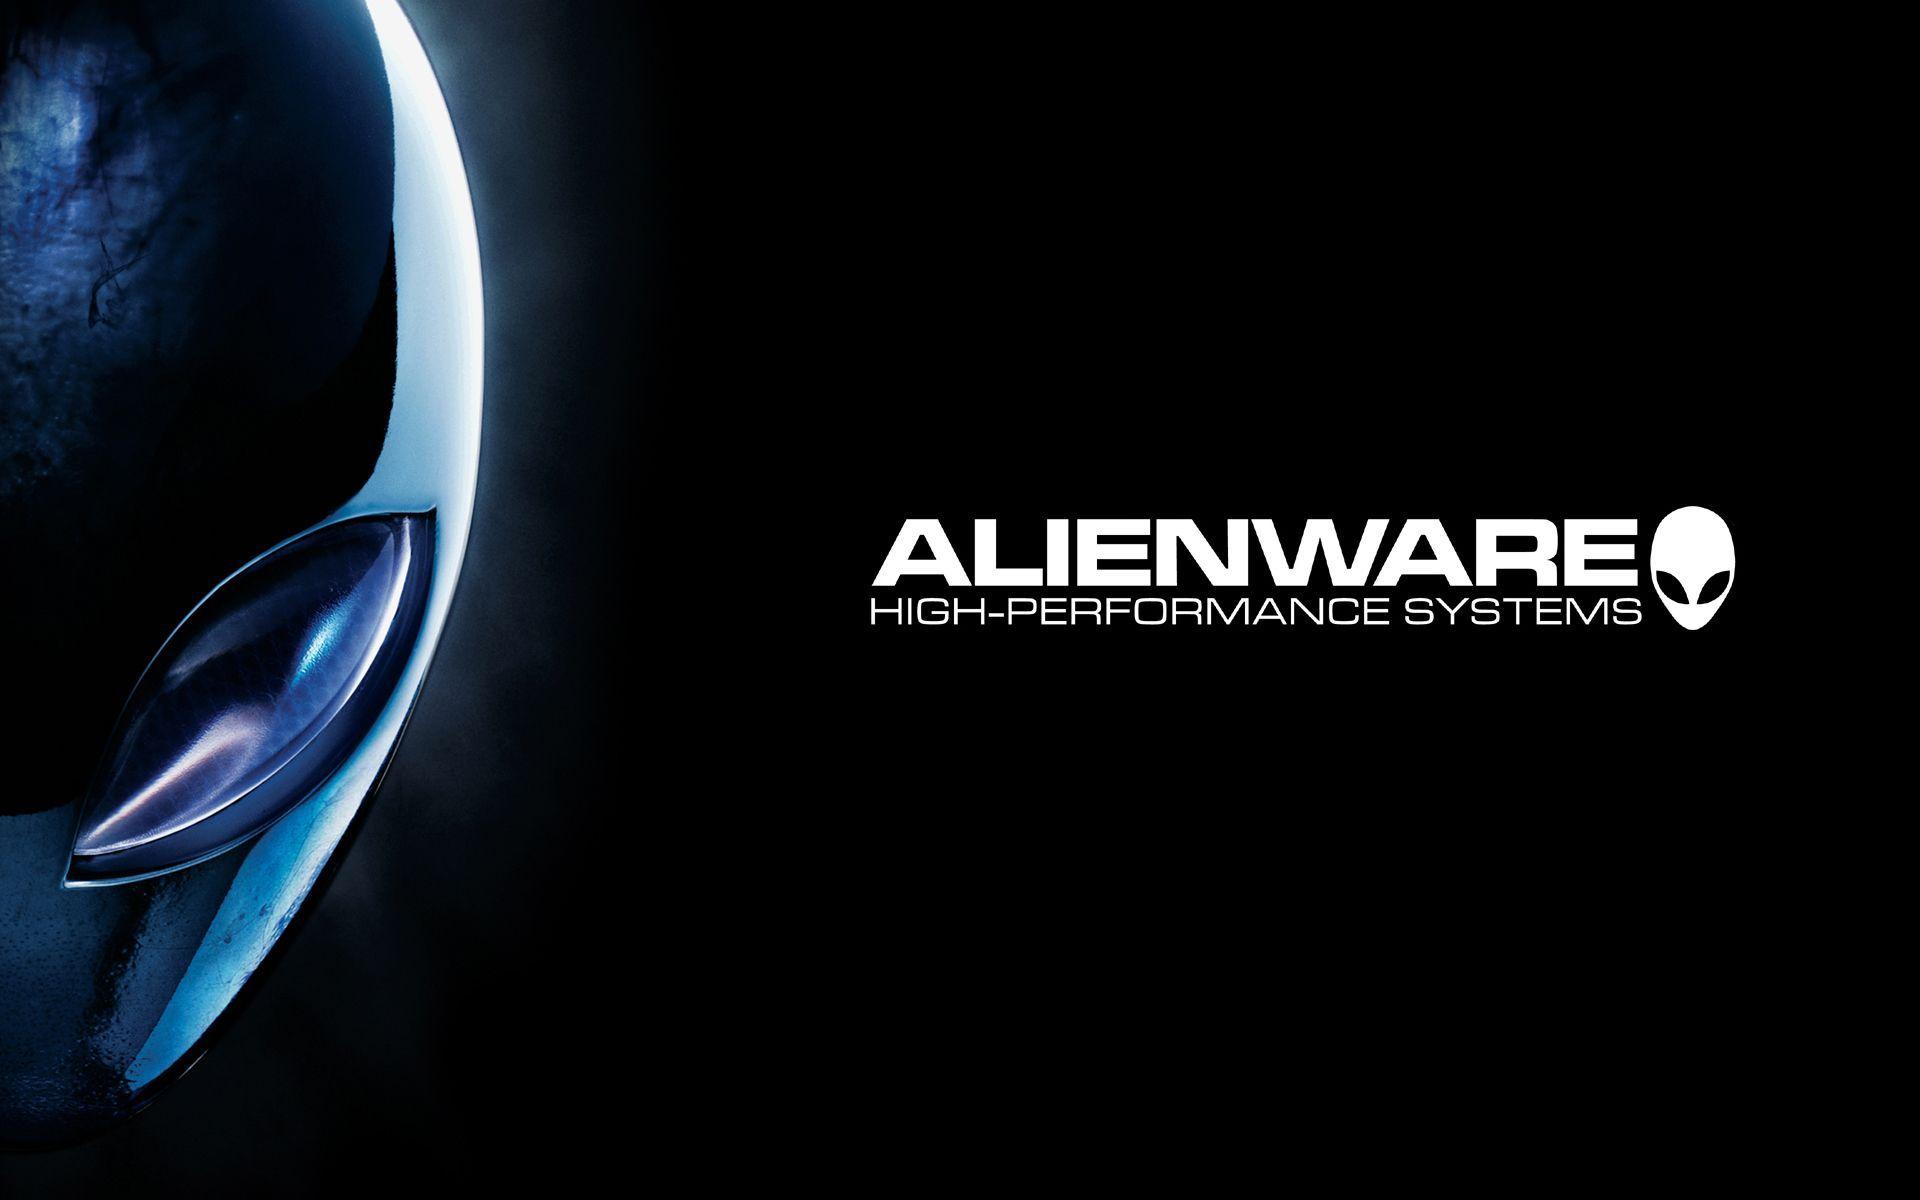 Bạn đang tìm kiếm một hình nền máy tính Alienware để tăng trải nghiệm sử dụng máy? Đừng bỏ lỡ những hình nền Alienware độc đáo này. Xem và tải các hình nền máy tính Alienware để nâng cao trang trí cho desktop của bạn.